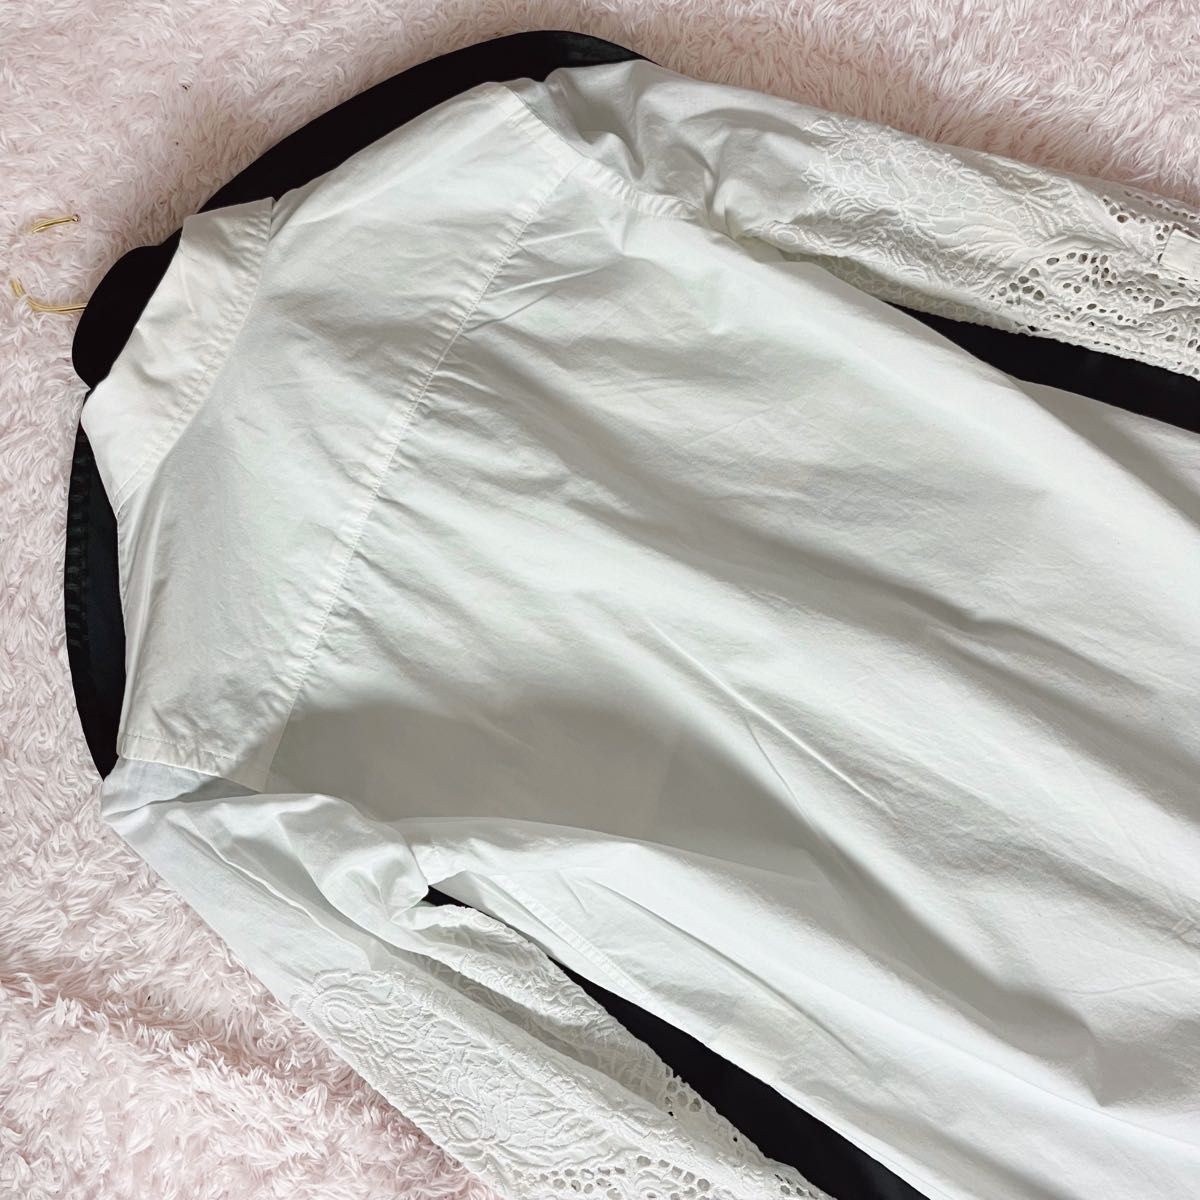 Y's ワイズ Yohji Yamamoto ヨウジヤマモト コットン 長袖 シャツ ブラウス 透かし彫り刺繍 レース 白 1